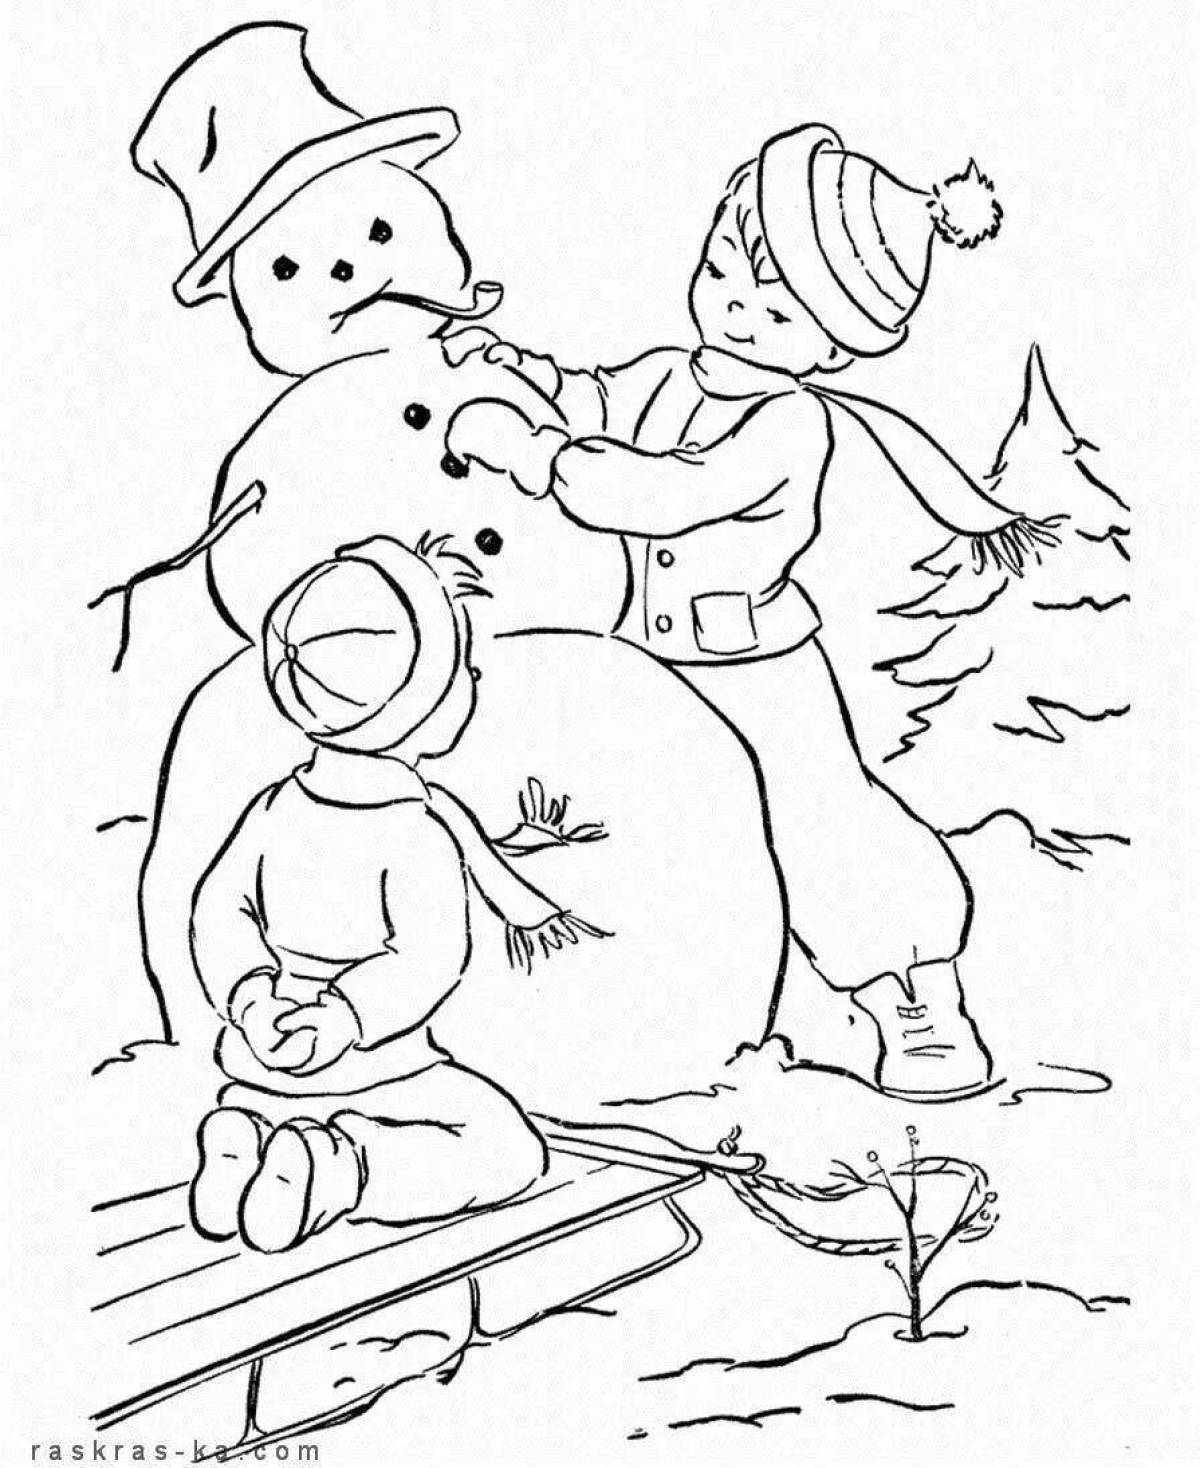 Fun coloring book winter fun for kids